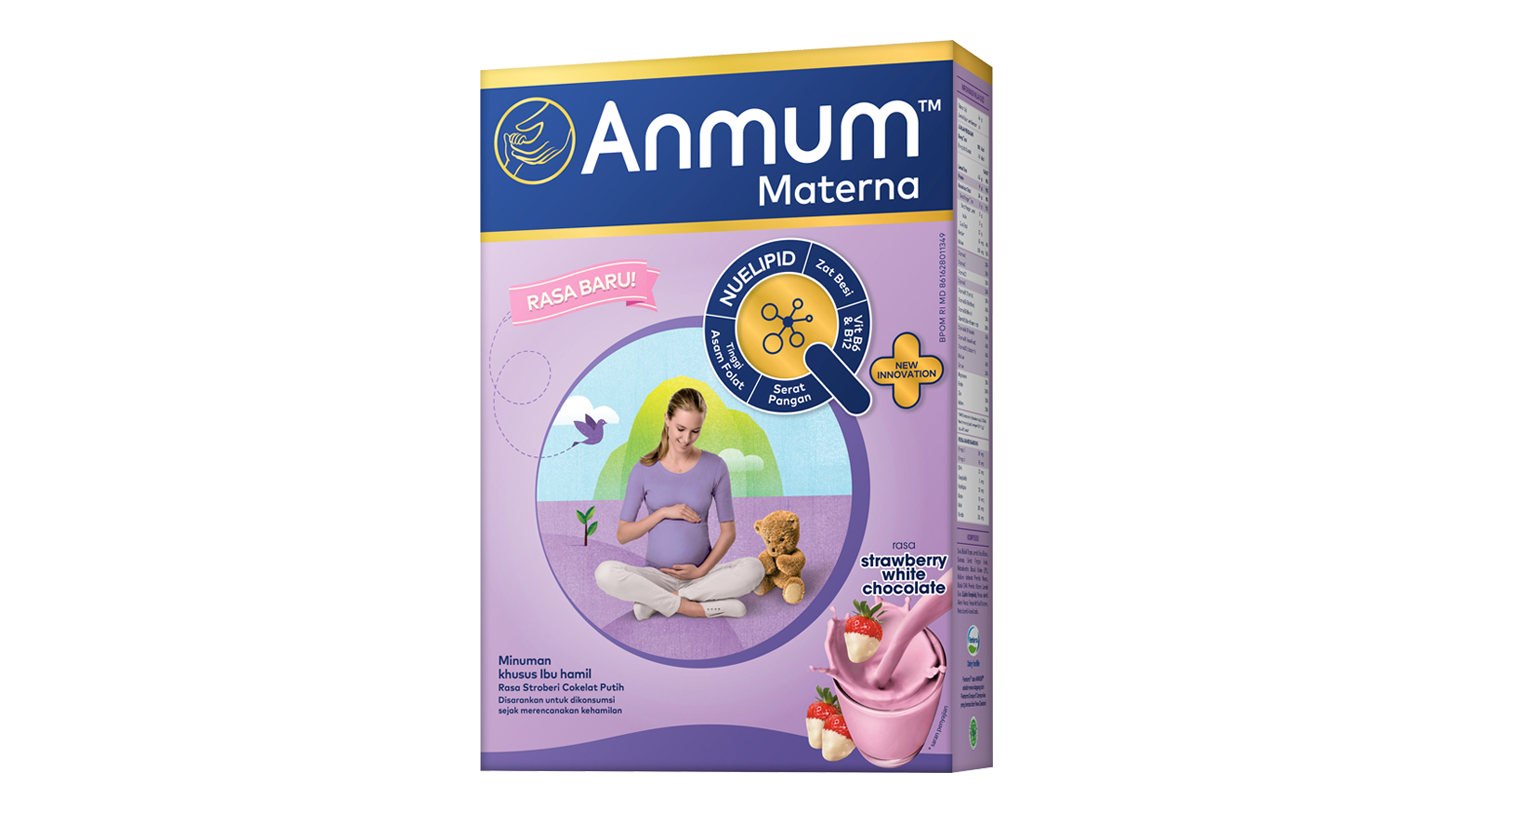 2. Anmum Materna menawarkan kandungan Inulin susunya